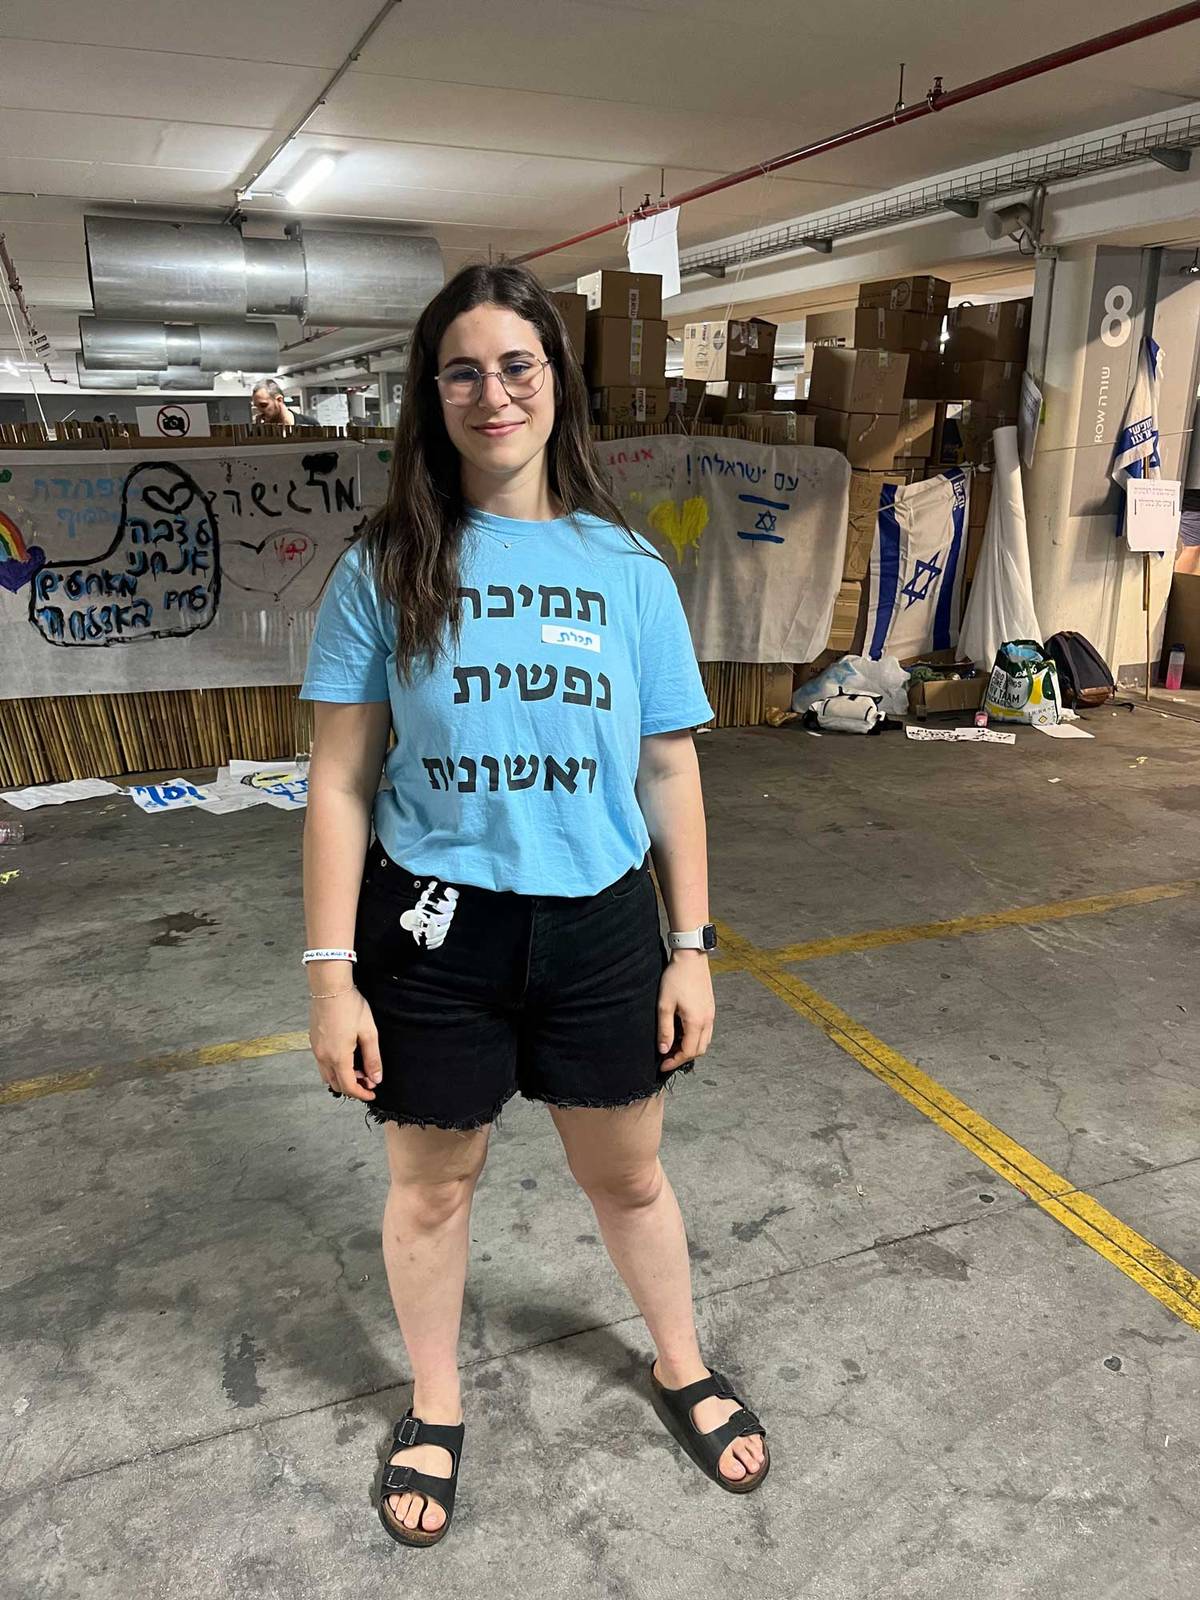 A mental health volunteer at Expo Tel Aviv